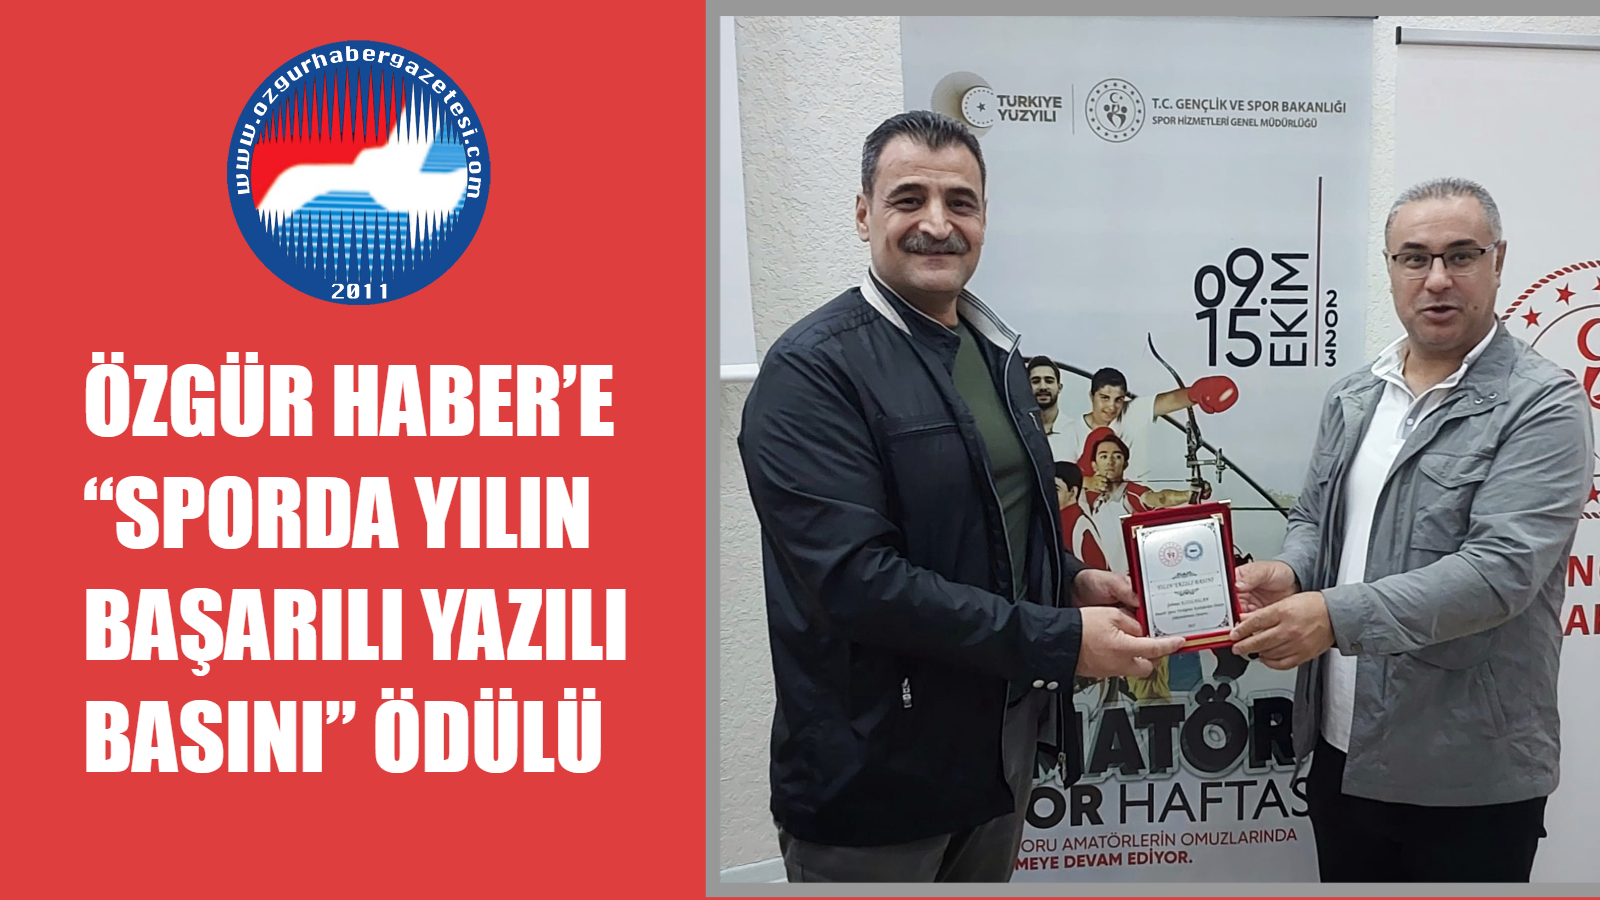 Özgür Haber’e “Sporda Yılın Başarılı Yazılı Basını” Ödülü